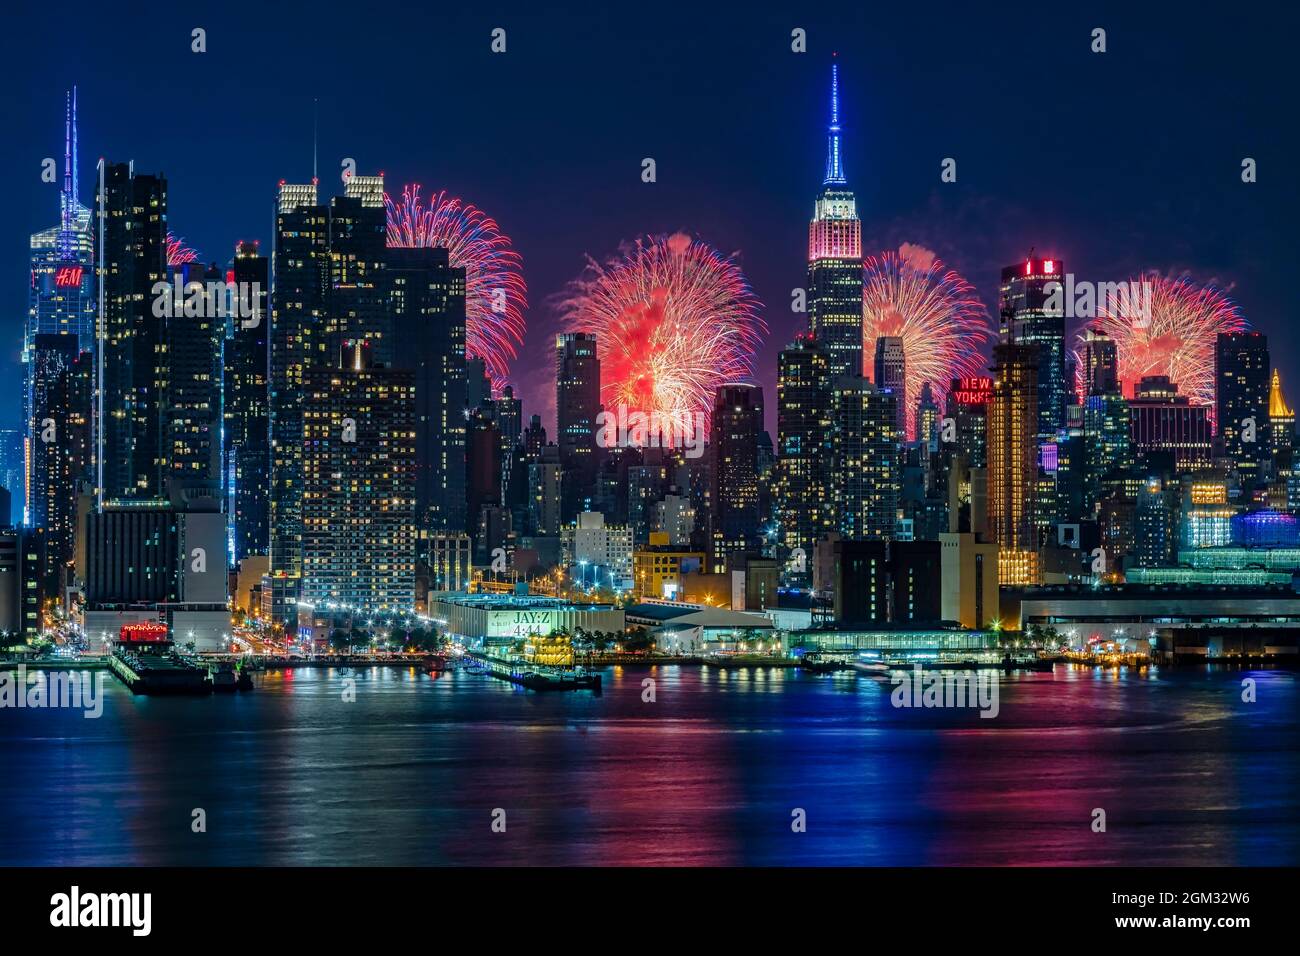 NYC Fireworks Celebration New York City skyline with the Macy's